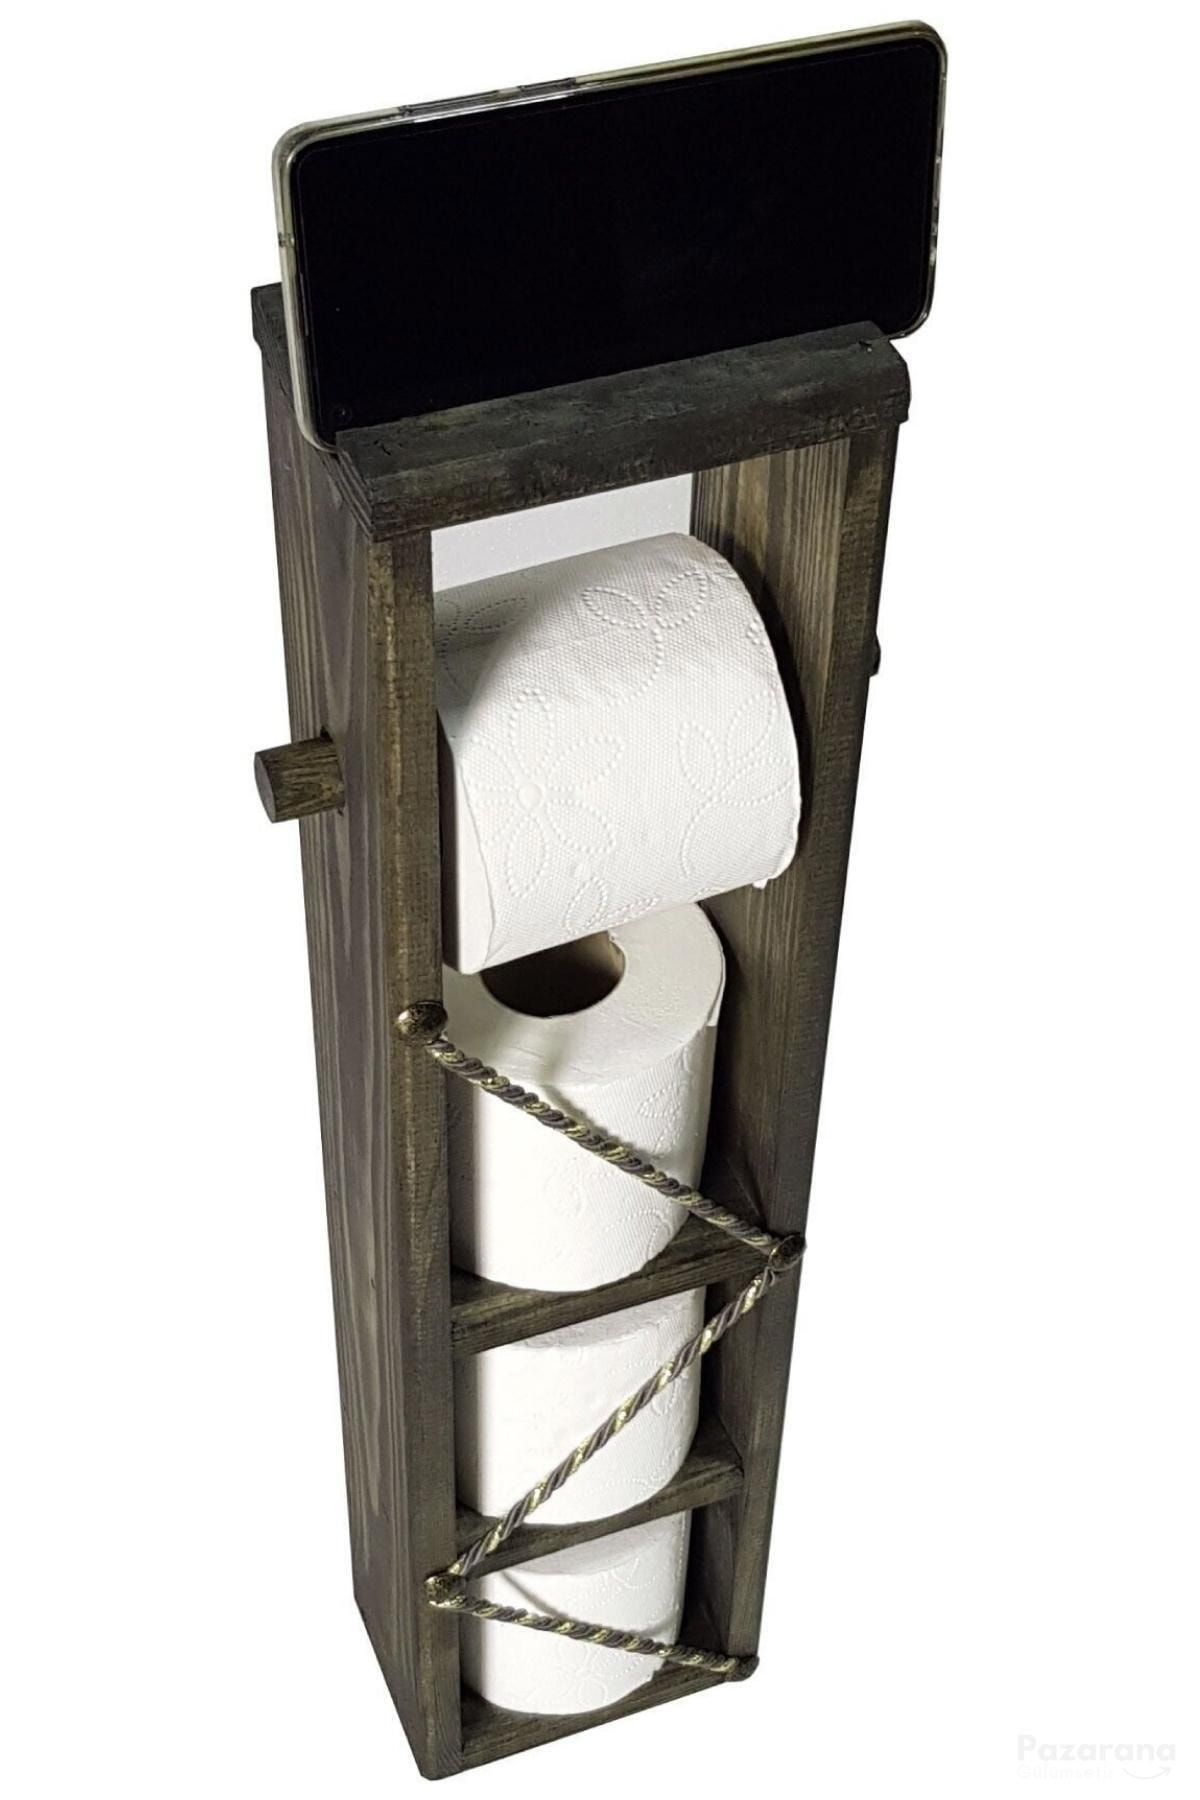 Ankaflex Ahşap Wc Kağıtlık Tuvalet Telefon Tutucu Standı Özellikli Banyo Kağıtlık Haki Renk